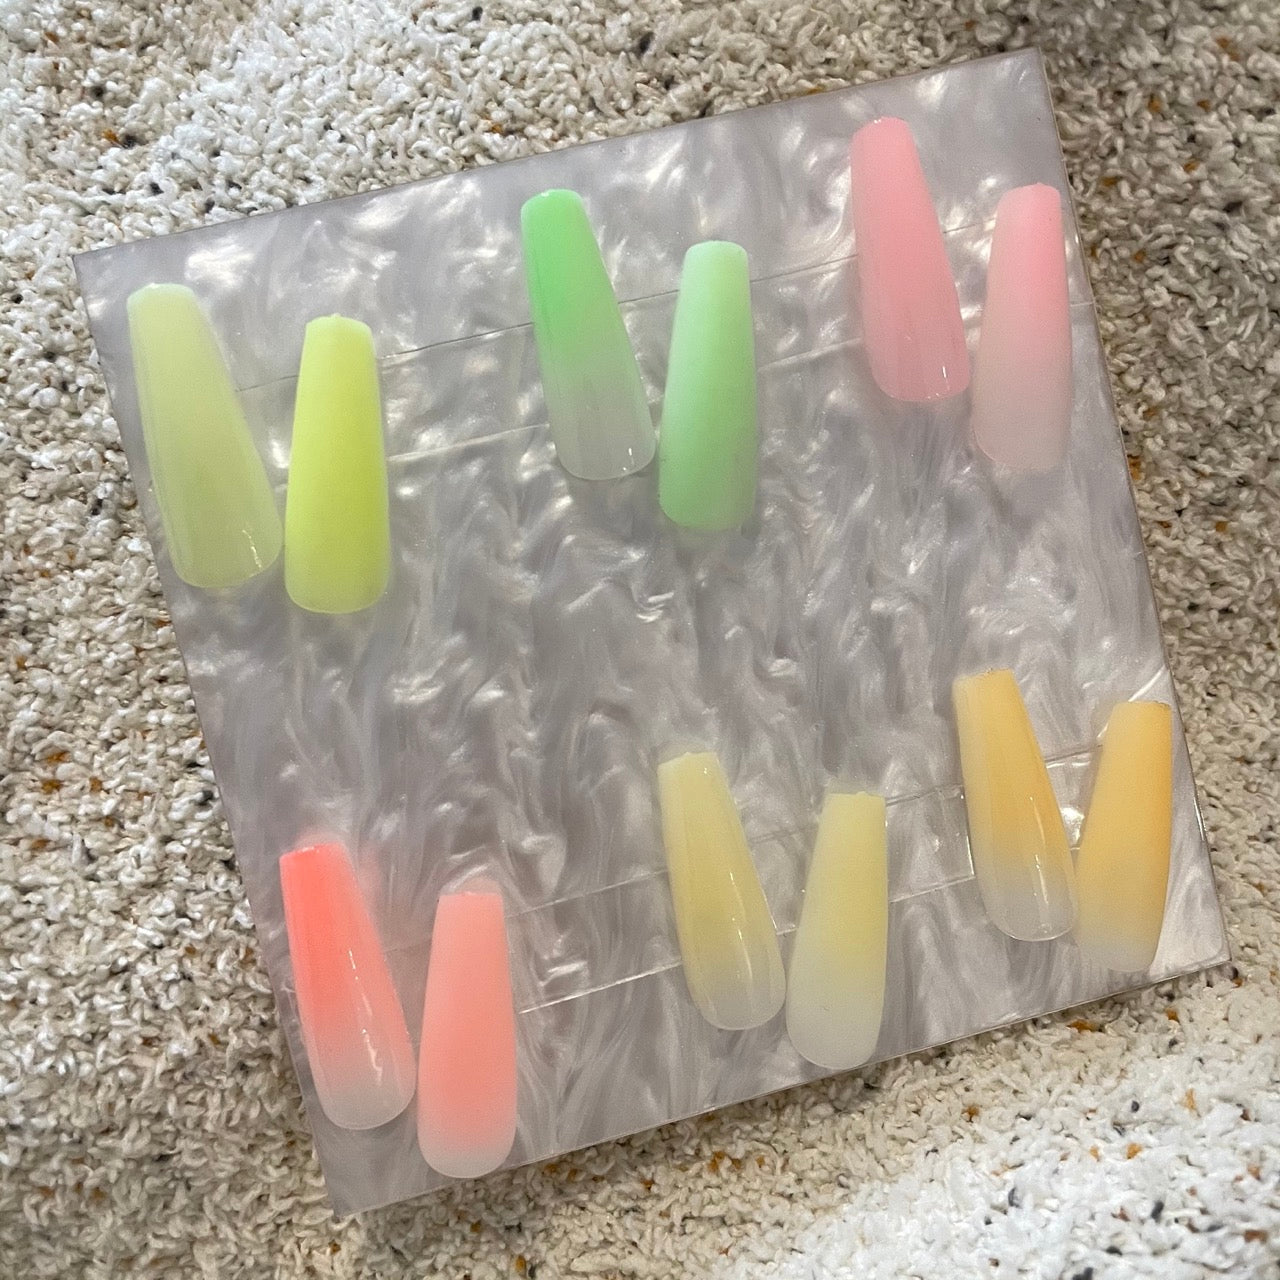 testing out favai airbrush gels 😻😻😻#aznailtech #auranails #airbrush